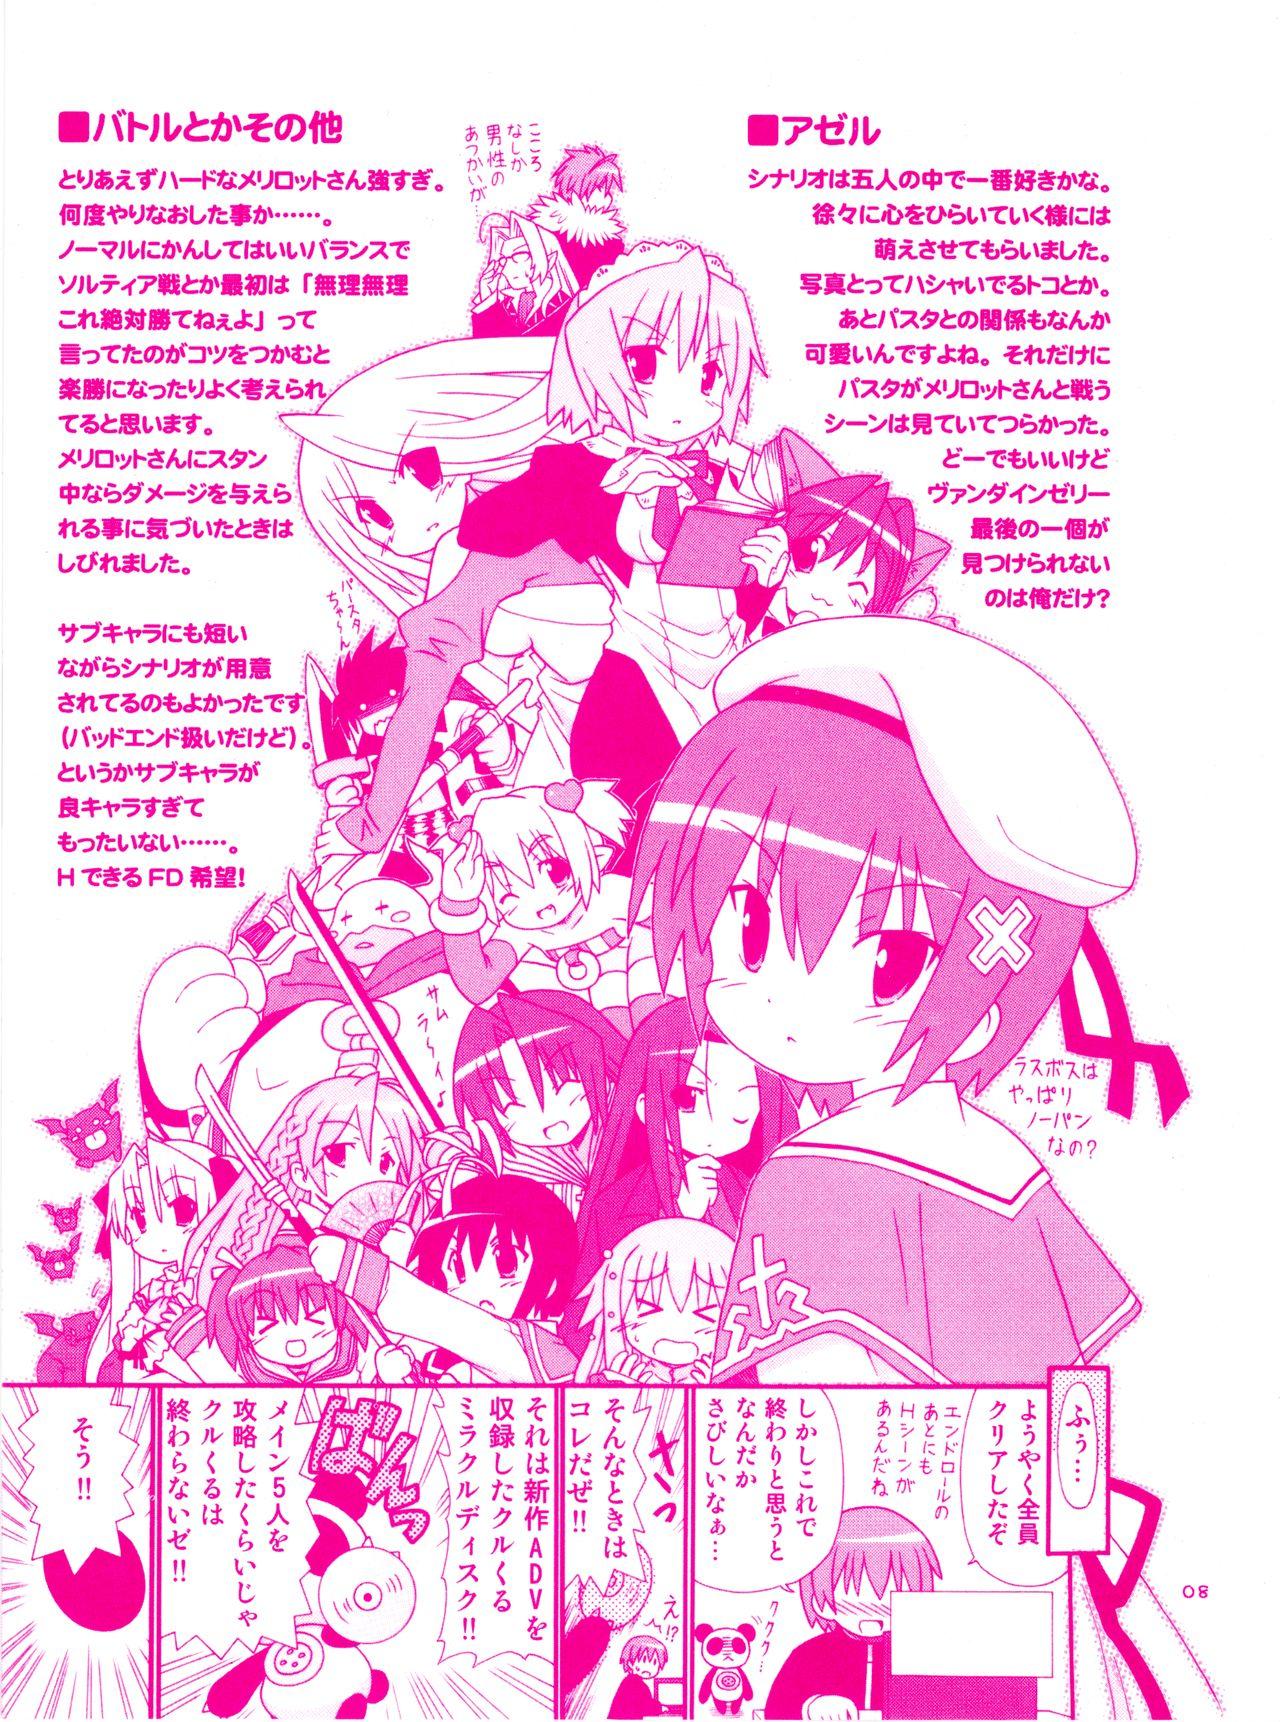 Man Twinkle☆Crusaders Kurukuru Most Secret Booklet - Twinkle crusaders She - Page 9